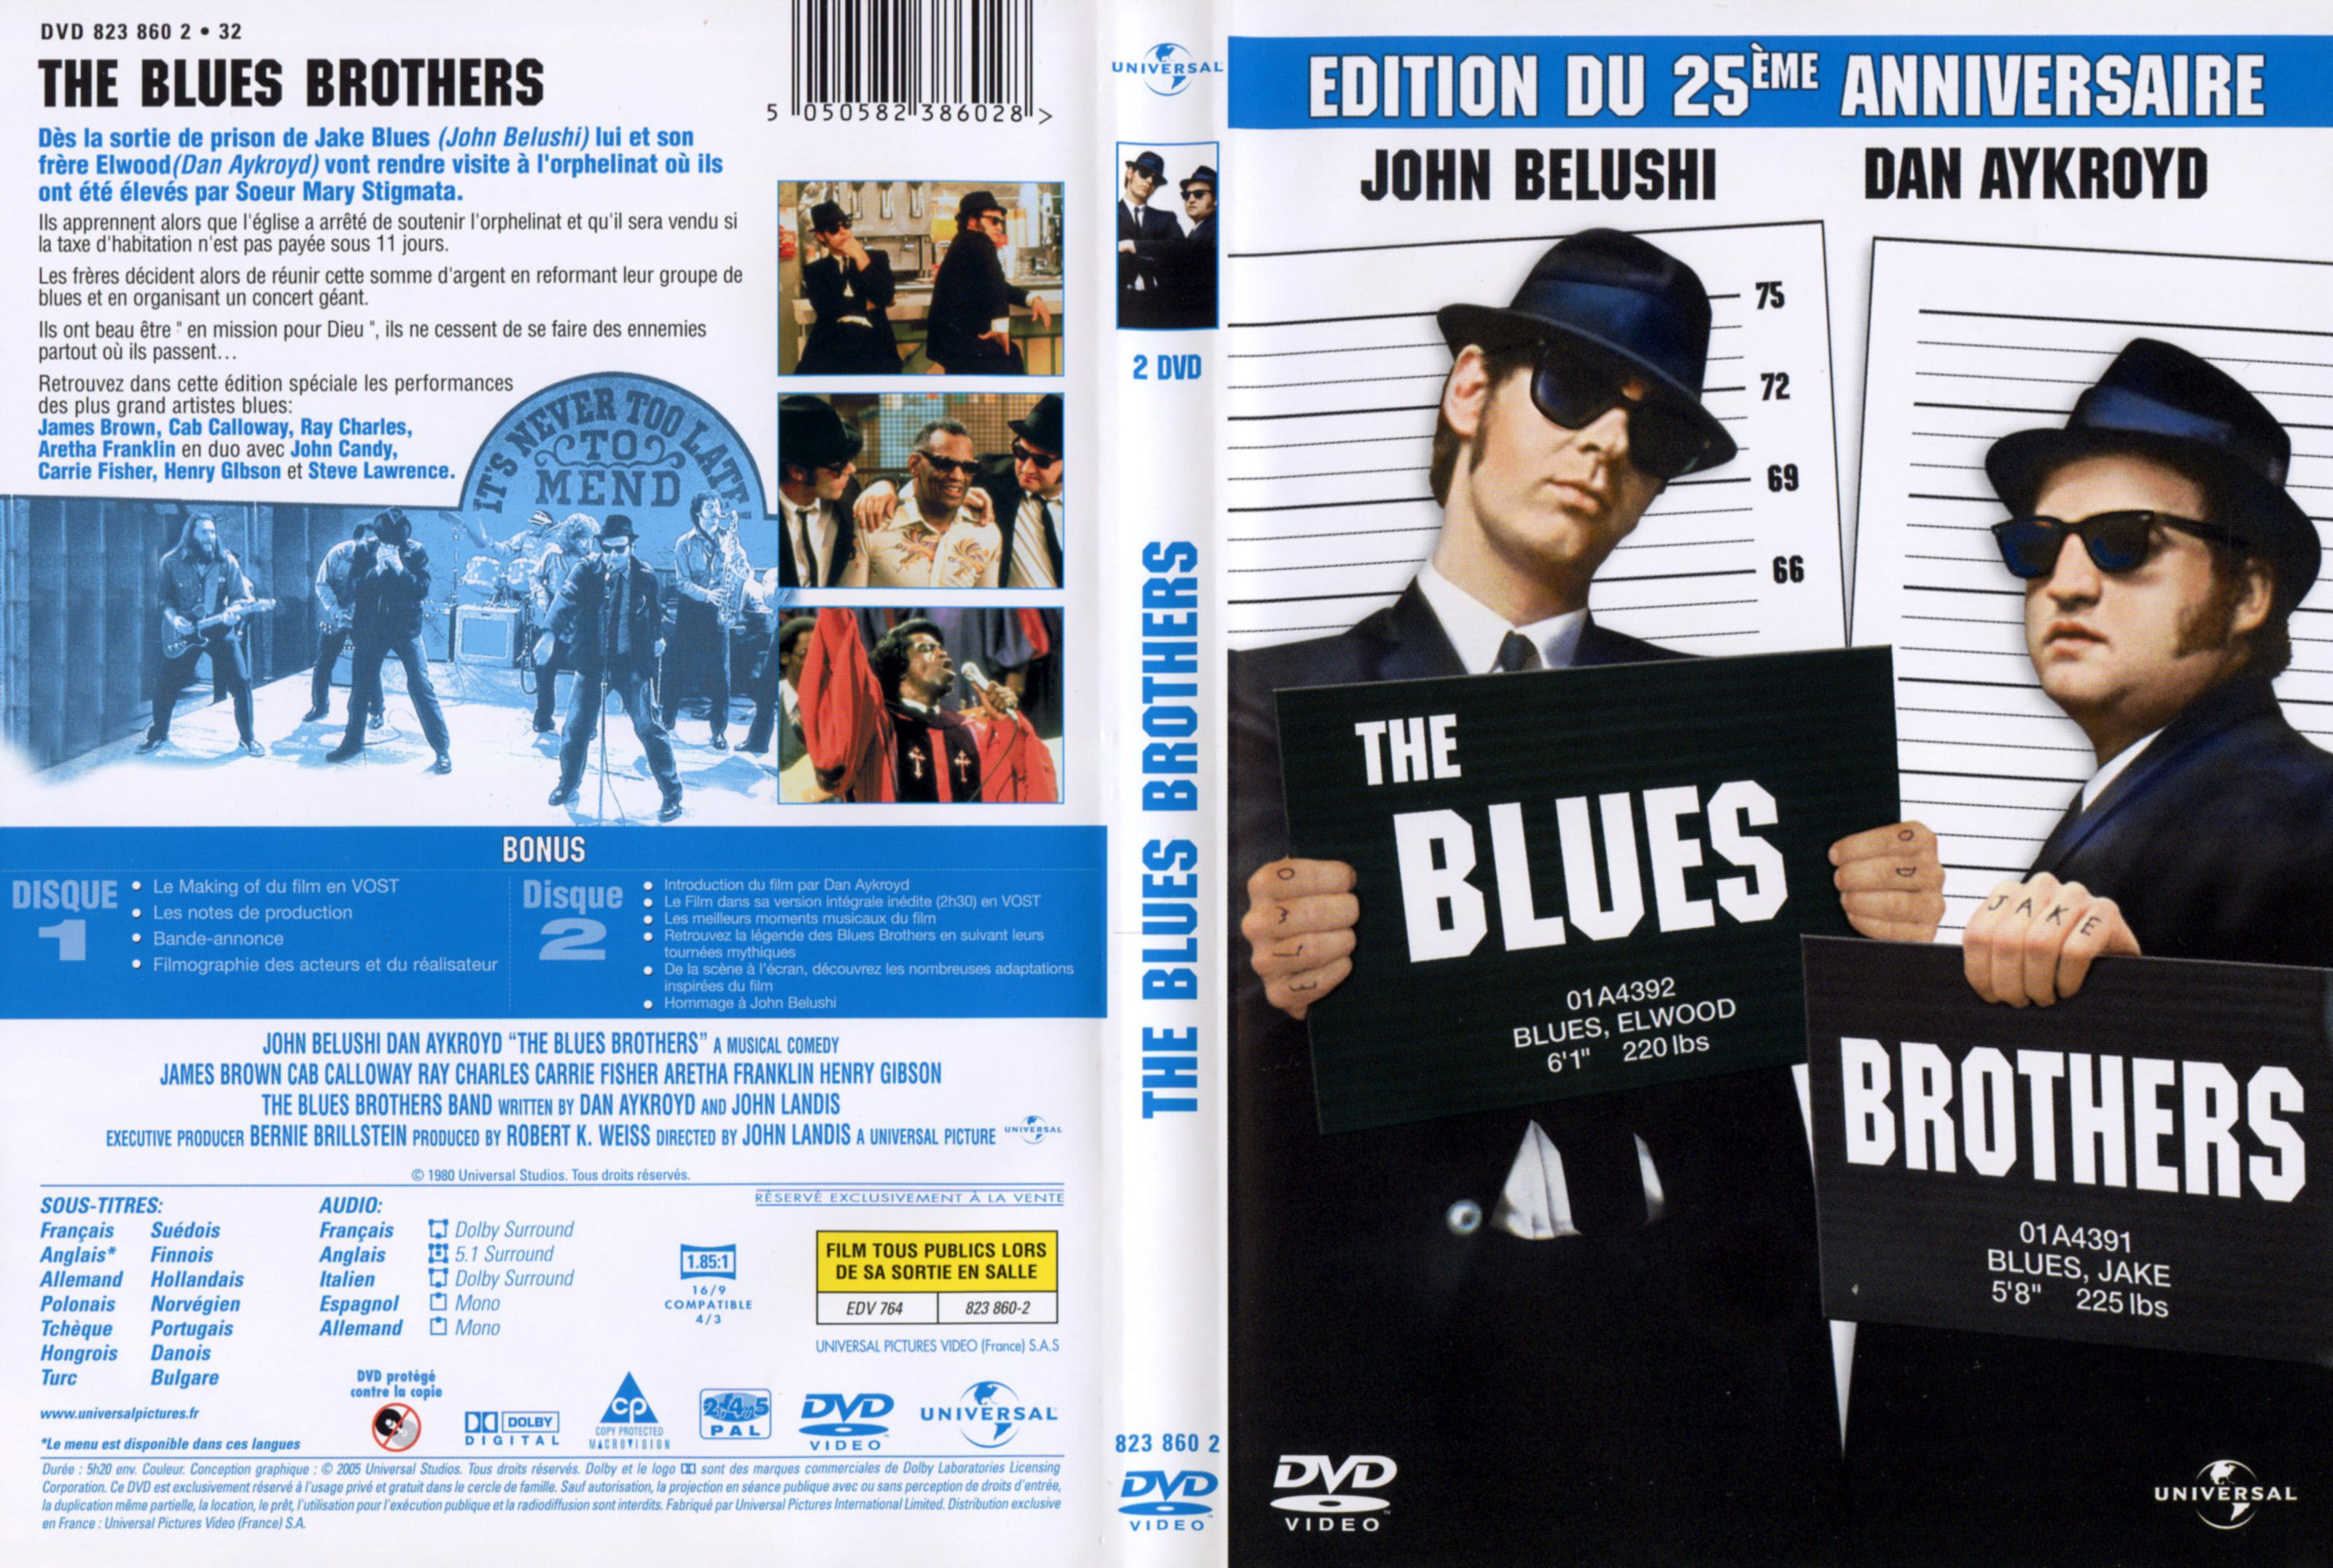 Jaquette Dvd De The Blues Brothers V4 Cinéma Passion